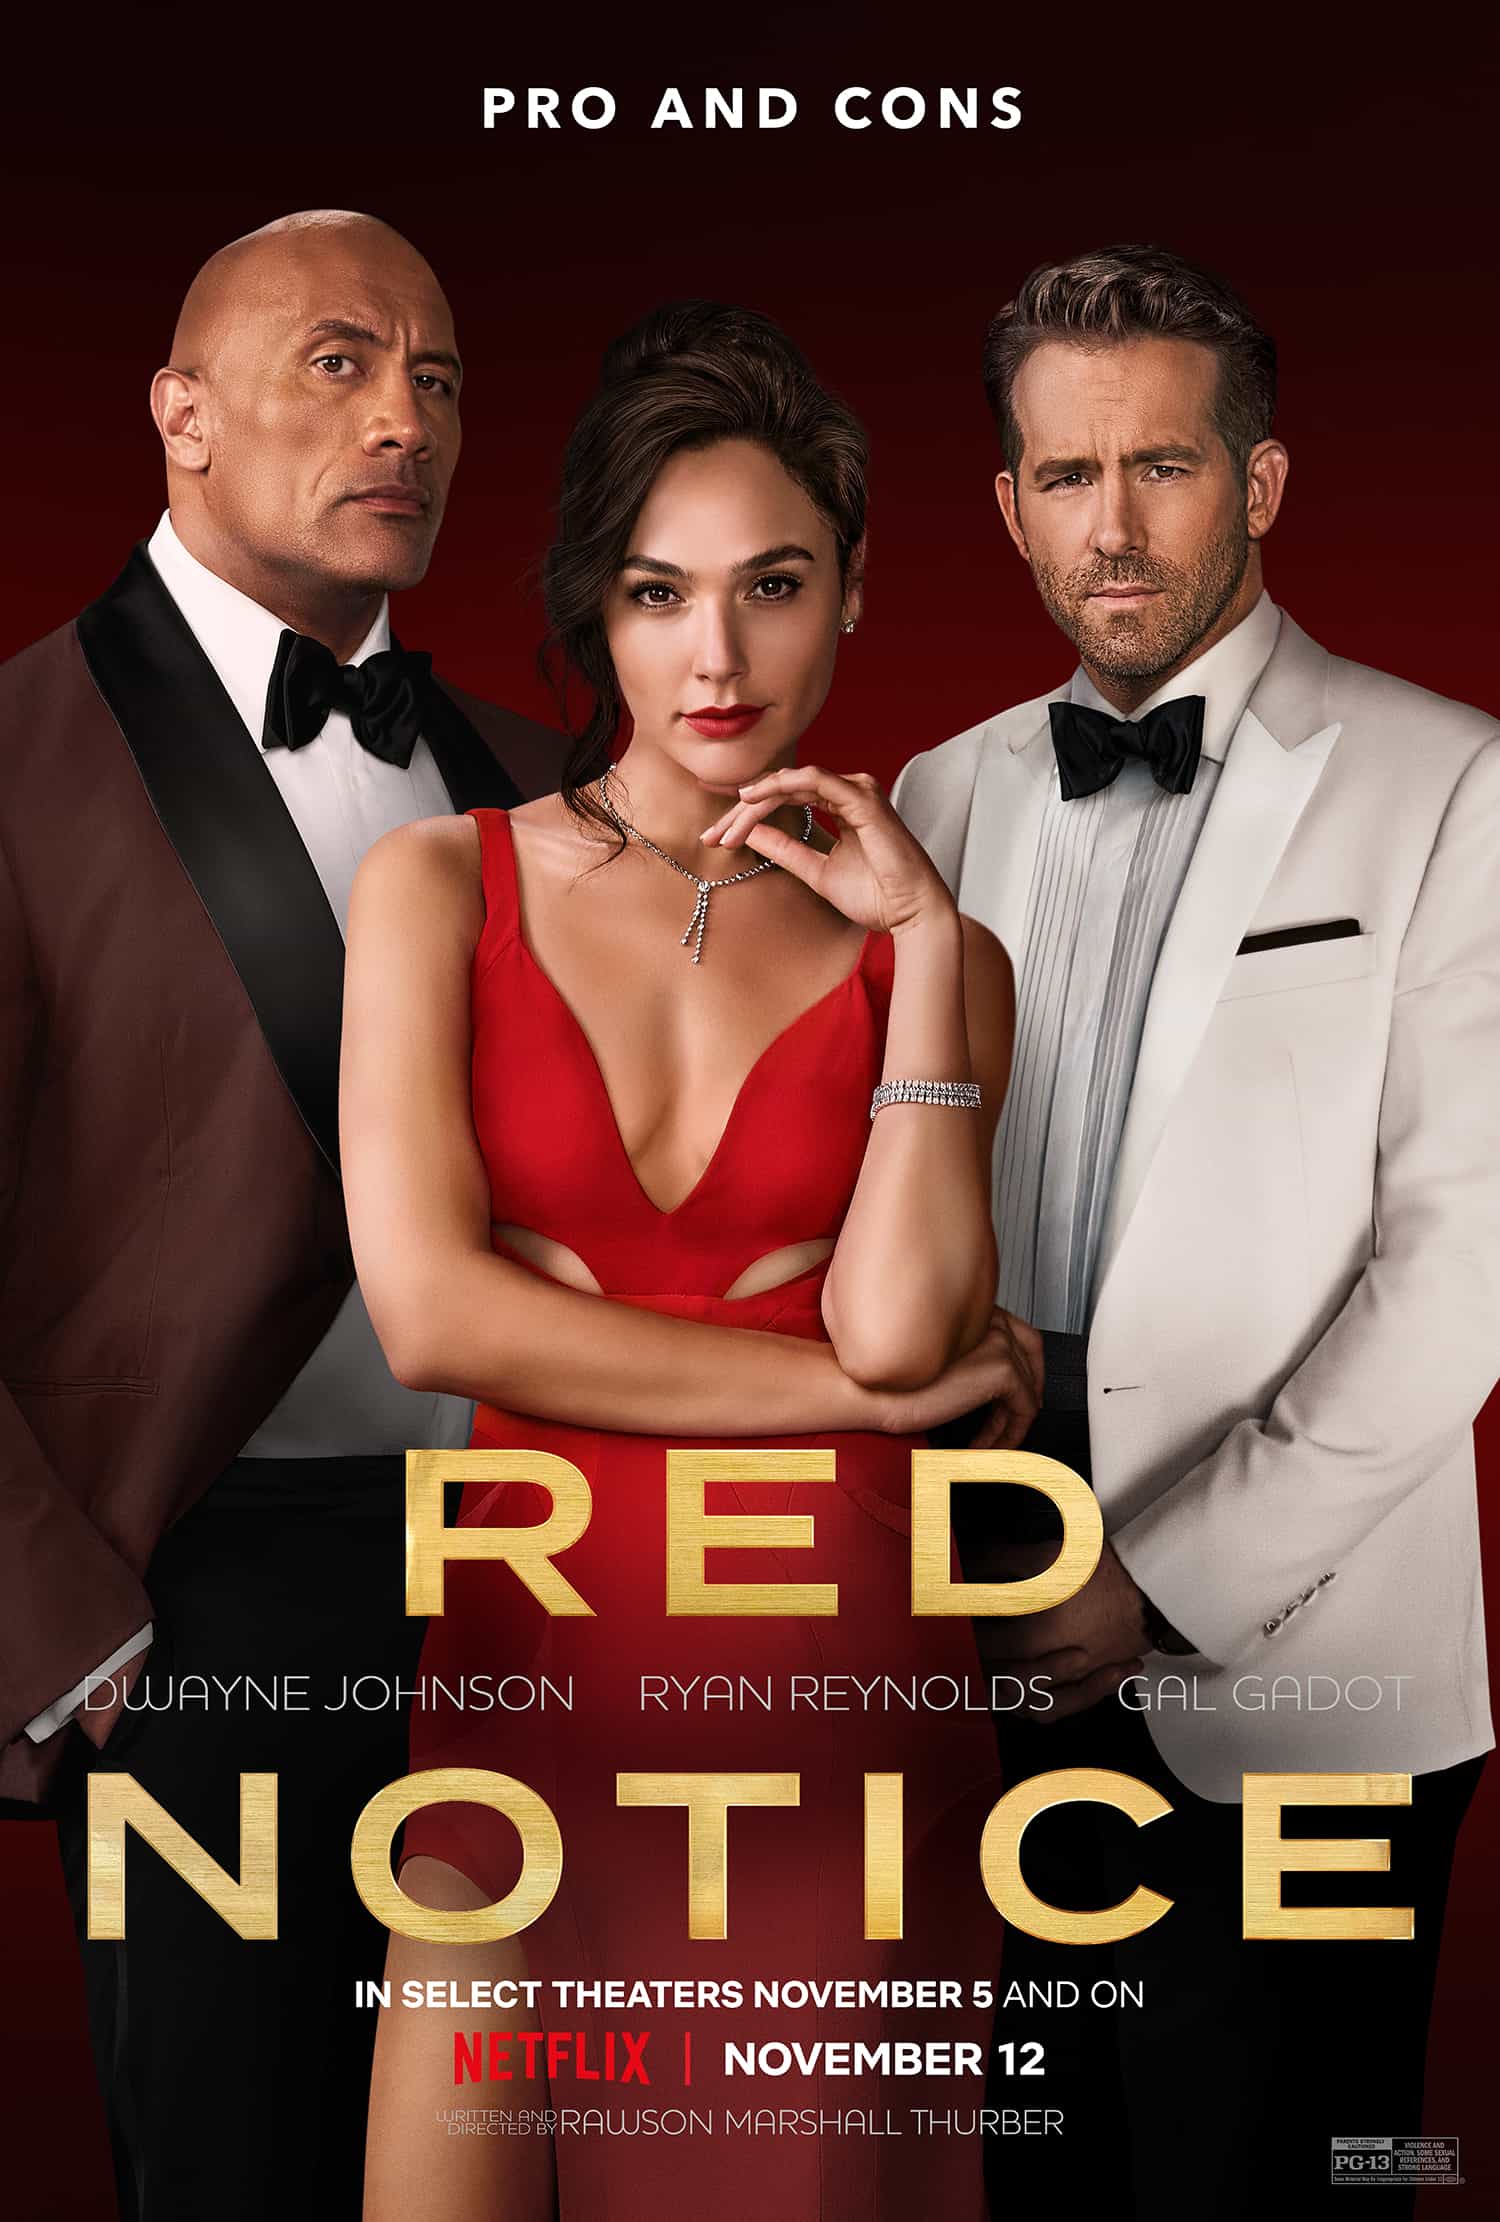 Movie Poster - Red Notice (2021 - Netflix)